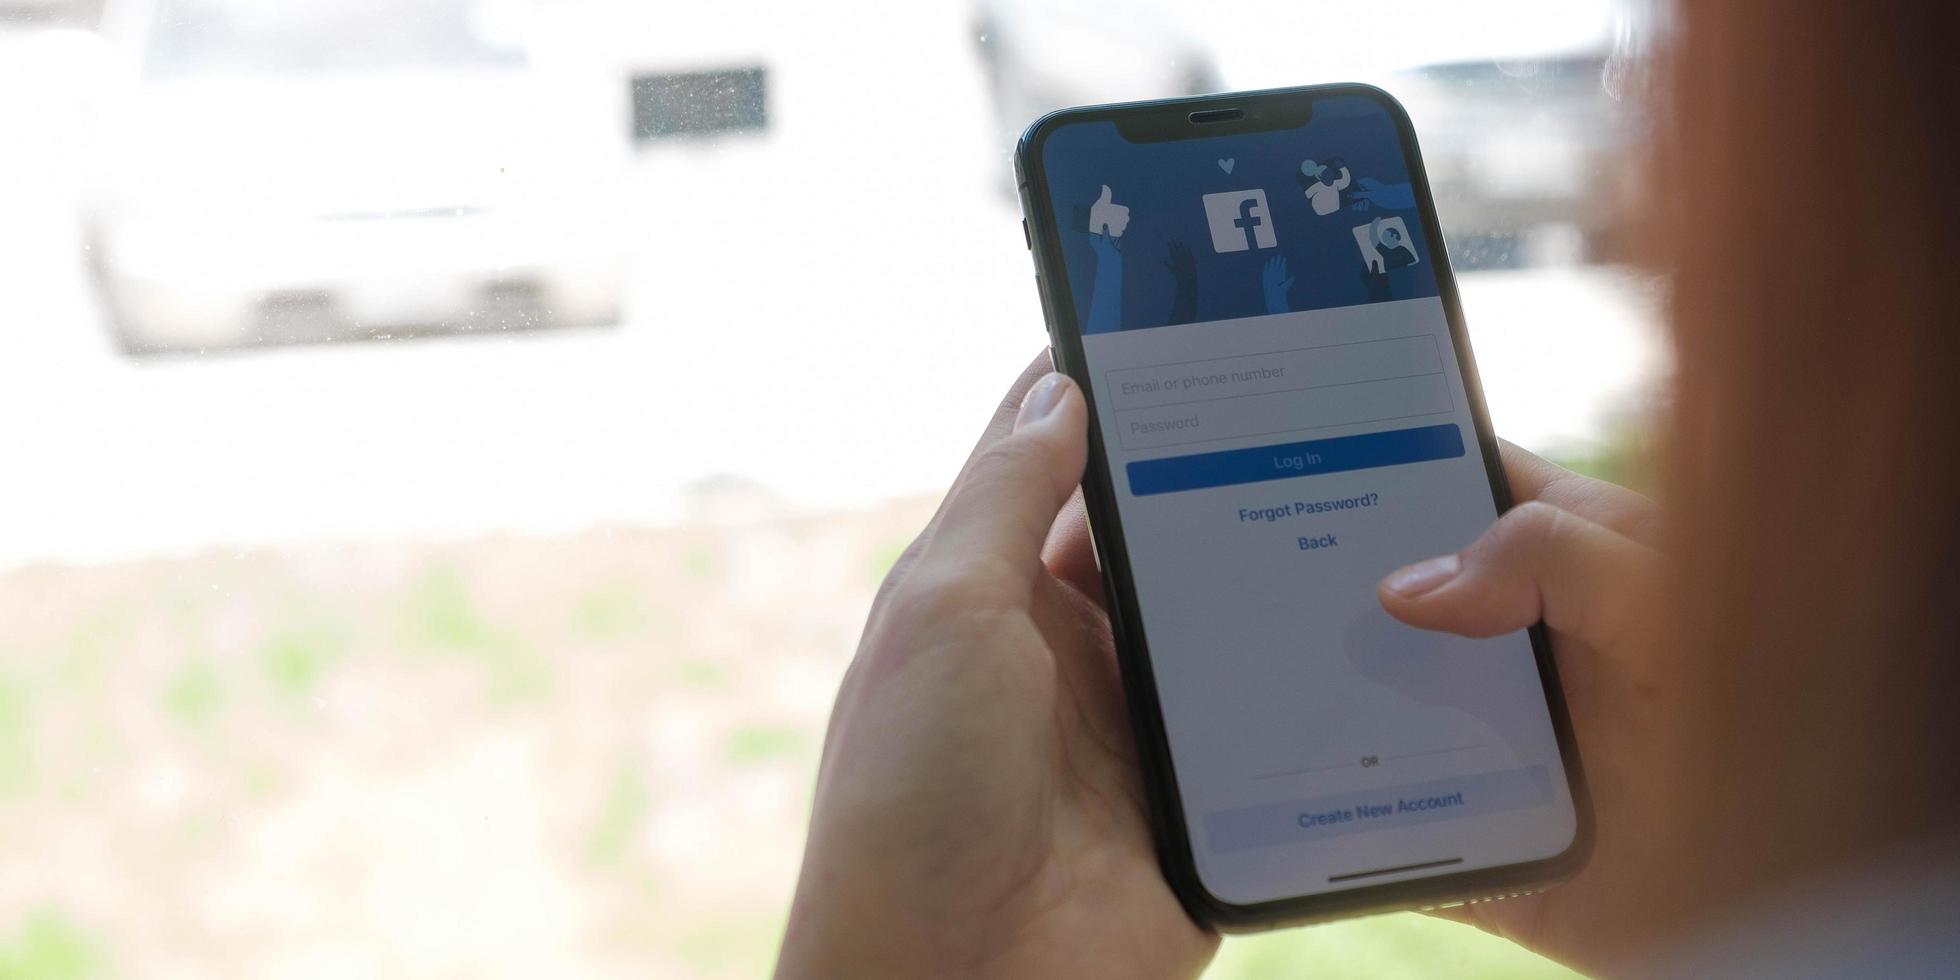 chiang mai, thaïlande 18 août 2020 - femme tenant un iphone x avec le service internet social facebook sur l'écran. photo